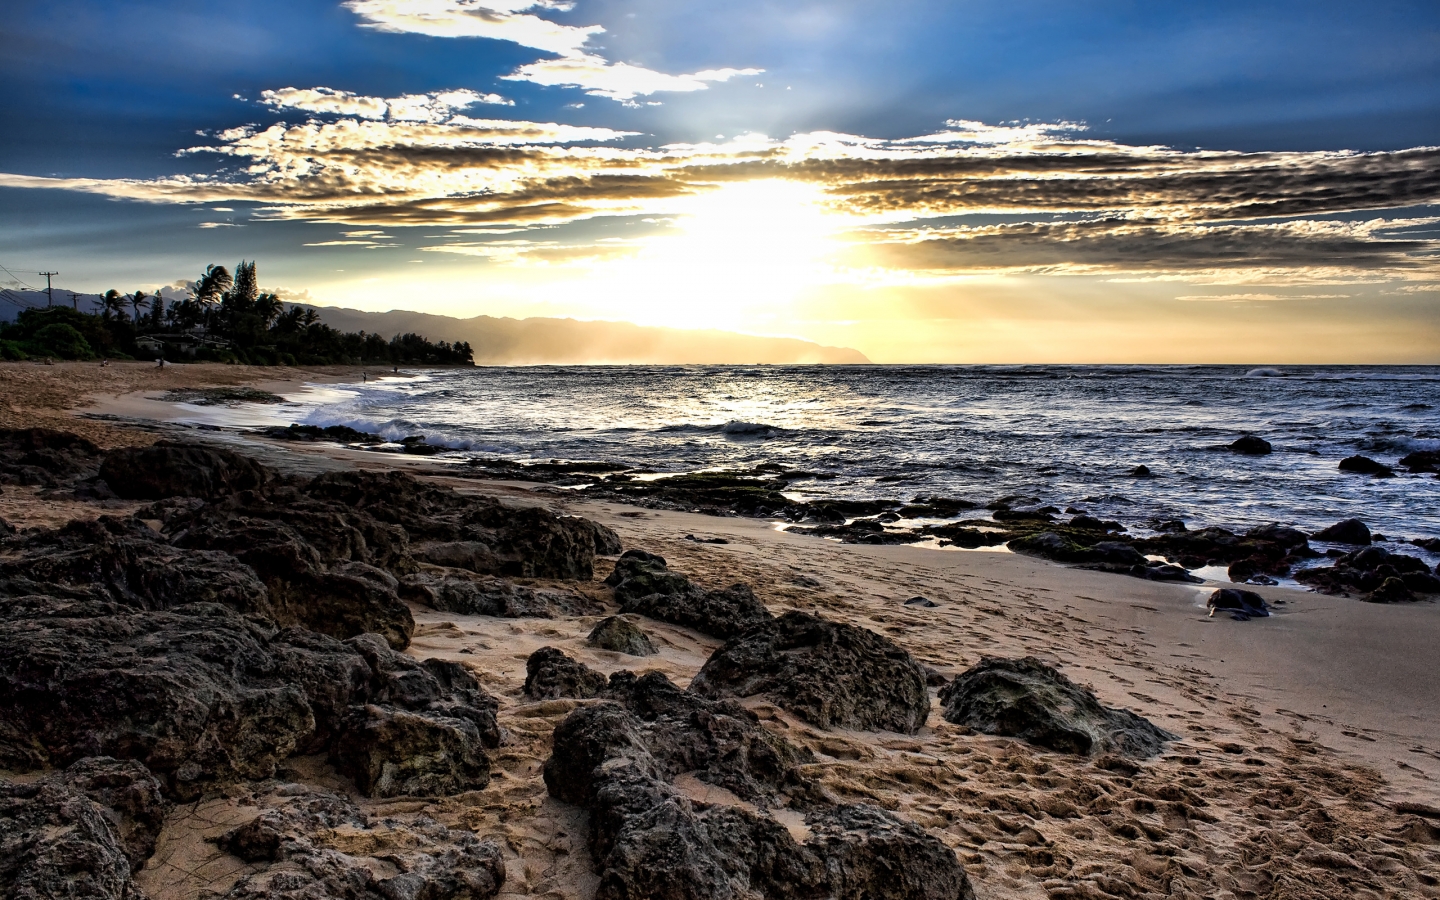 Laniakea Sunset for 1440 x 900 widescreen resolution